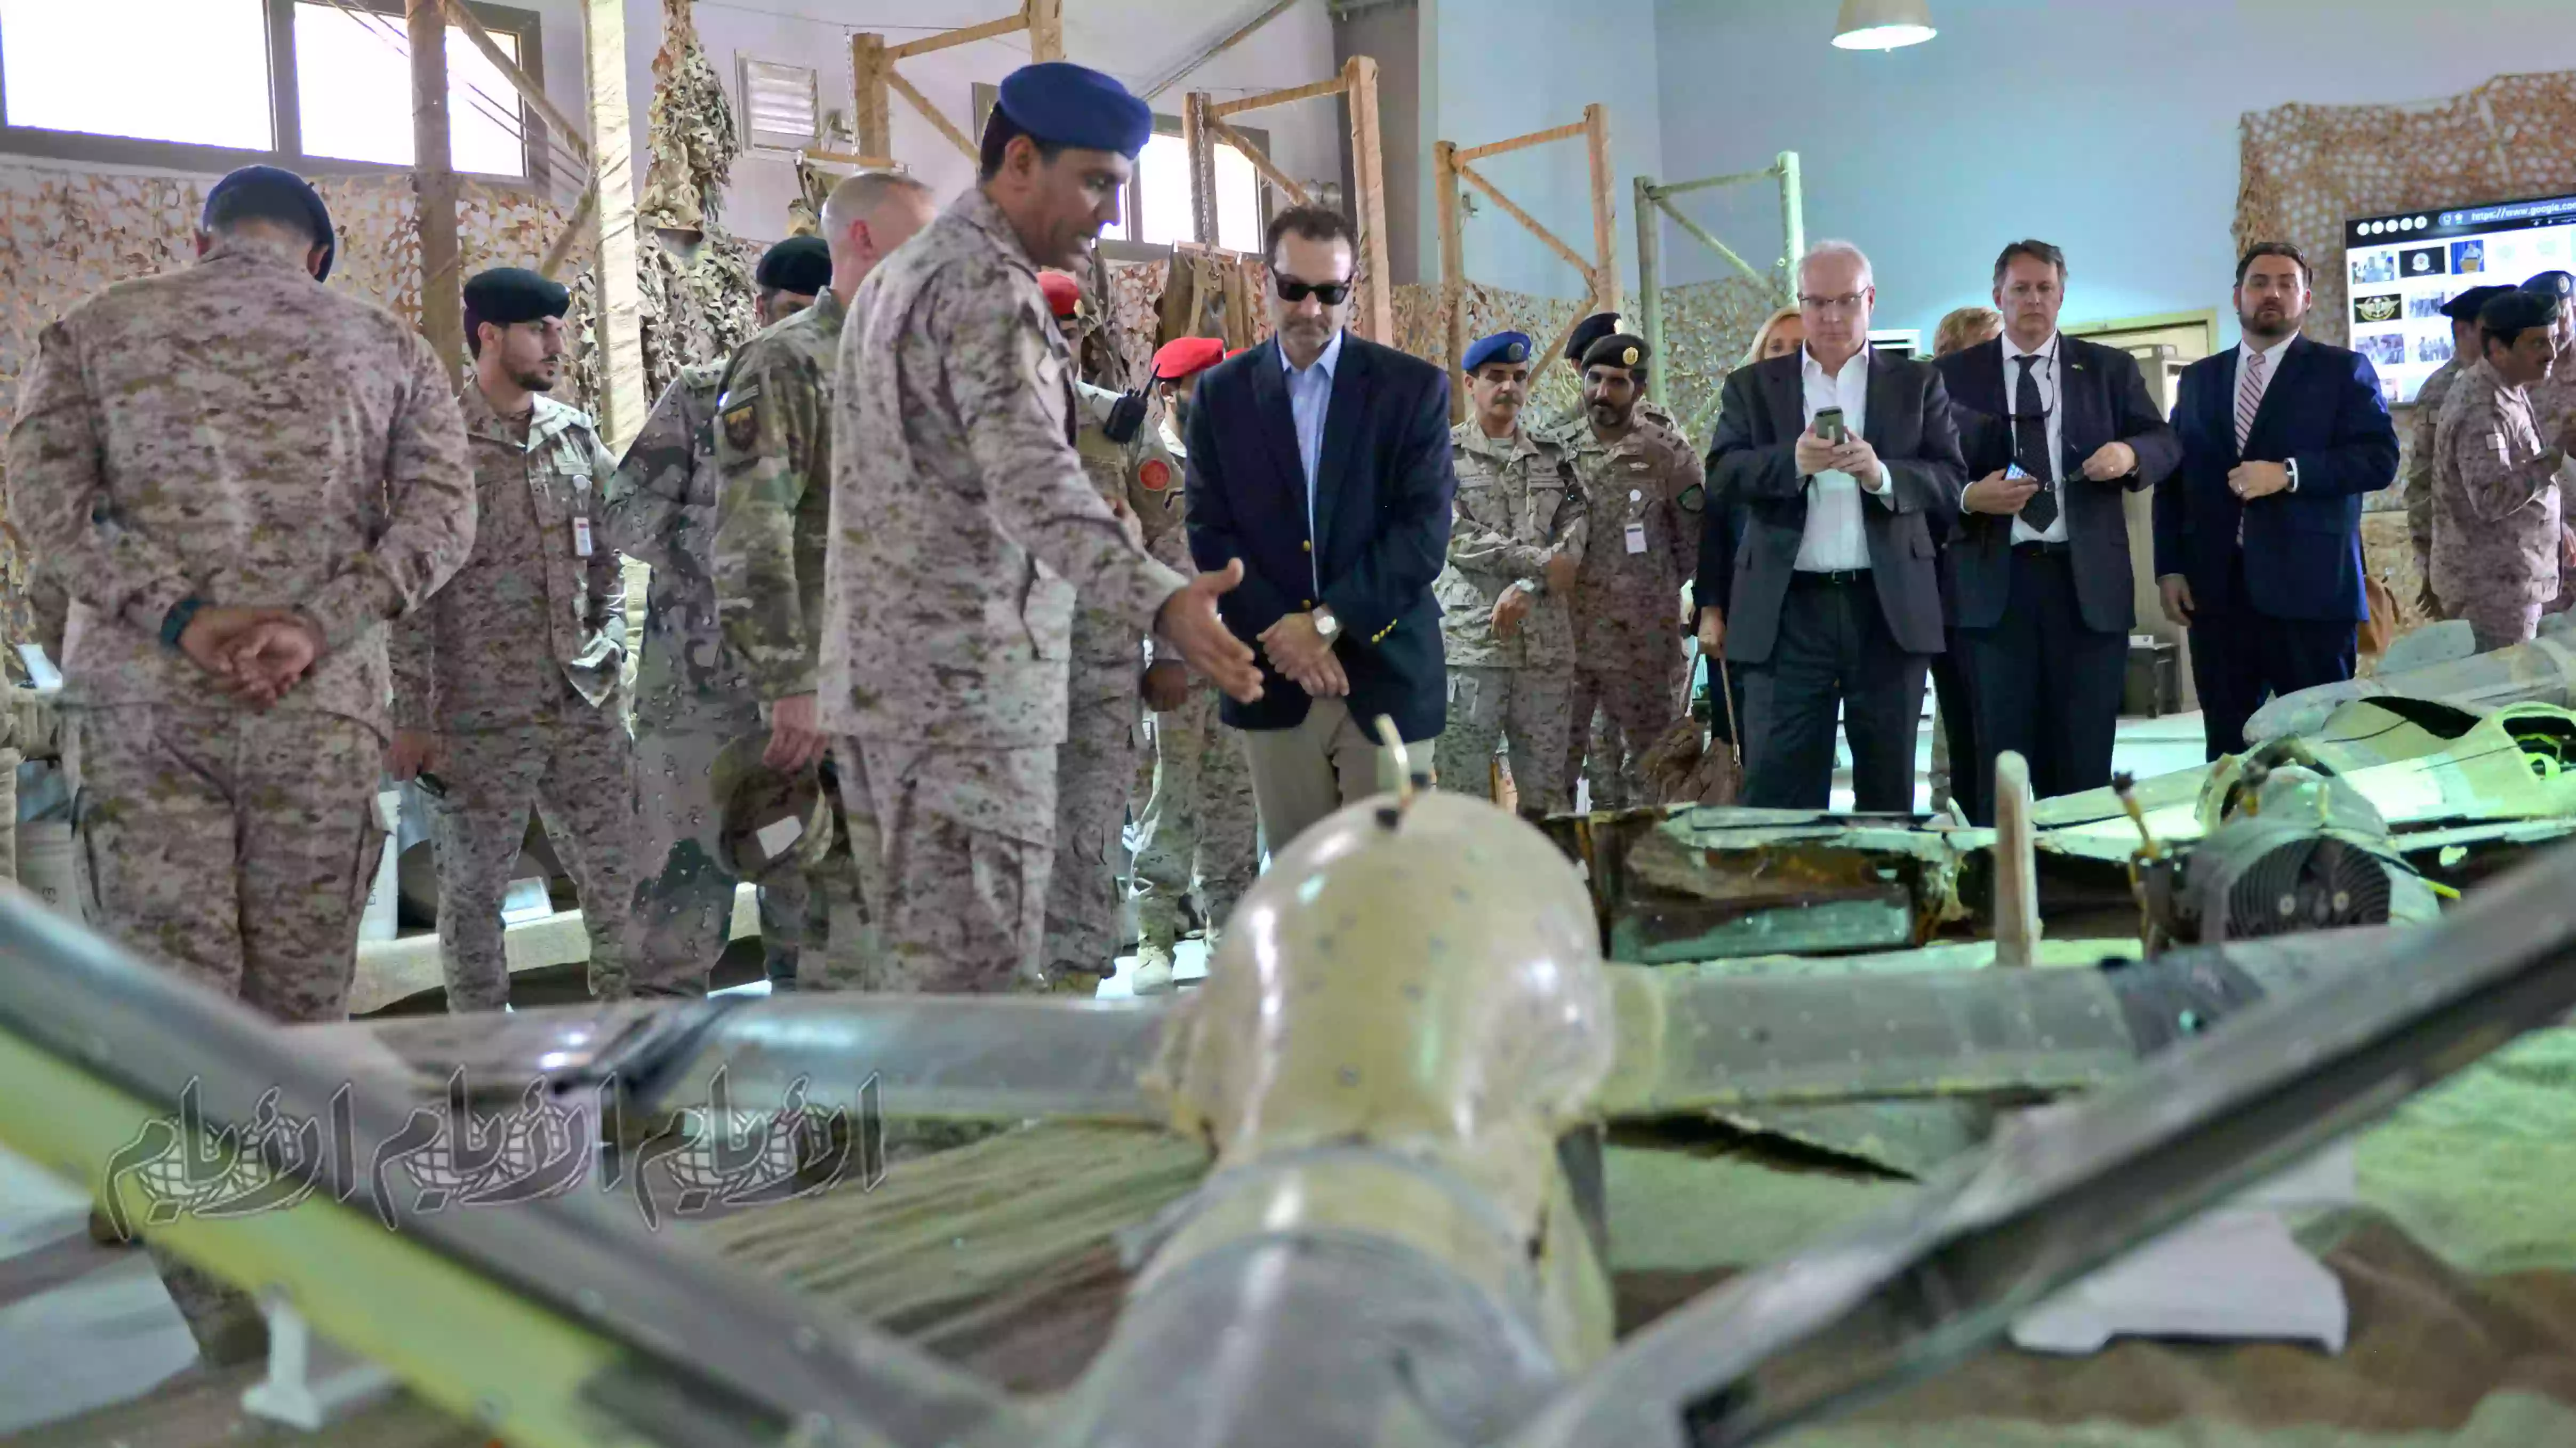 يُظهر العقيد السعودي تركي بن ​​صالح المالكي مساعد وزير الخارجية الأمريكي لشؤون الشرق الأدنى ديفيد شينكر الأسلحة الإيرانية التي استولت عليها القوات السعودية من المتمردين الحوثيين في اليمن